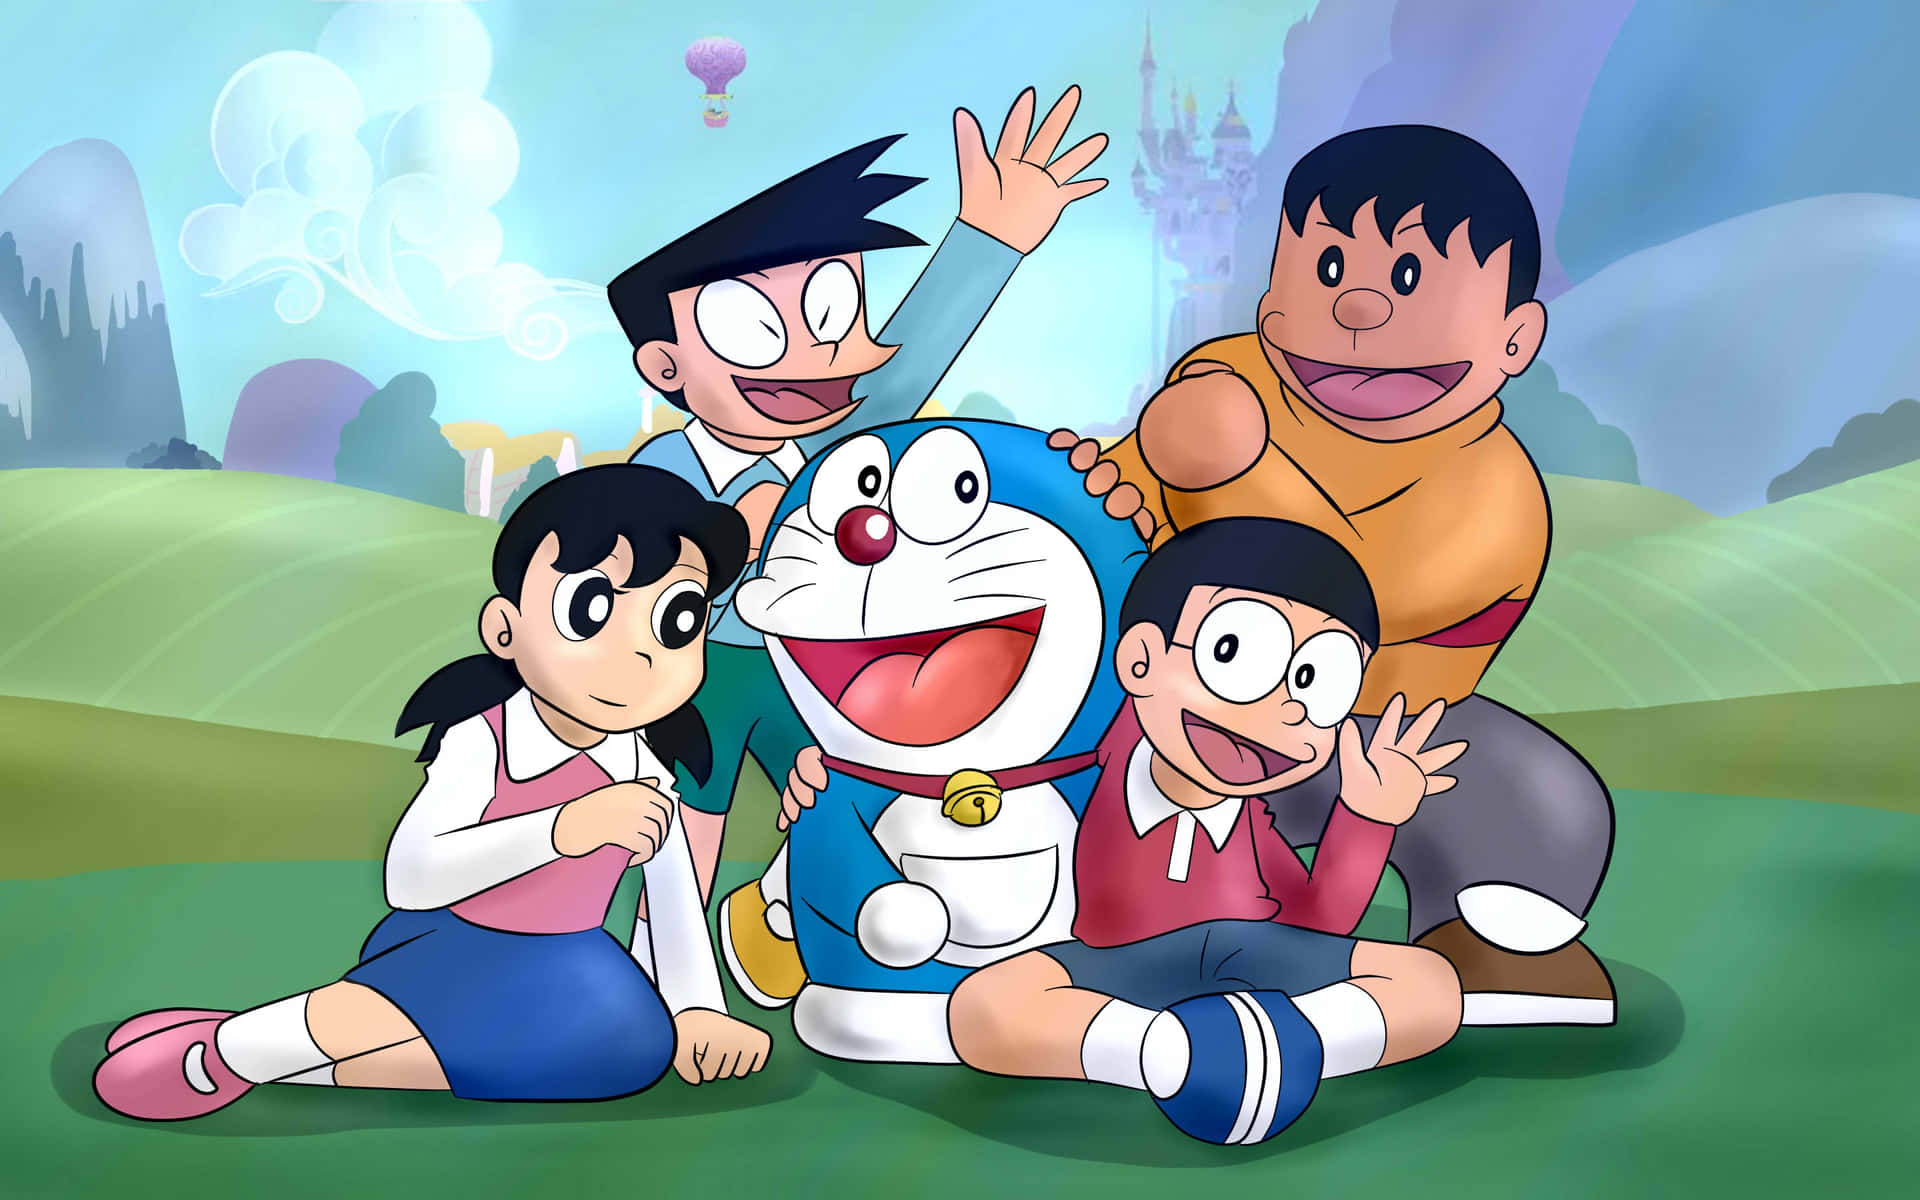 Doraemontecknade Figurer Poserar Framför Ett Slott.